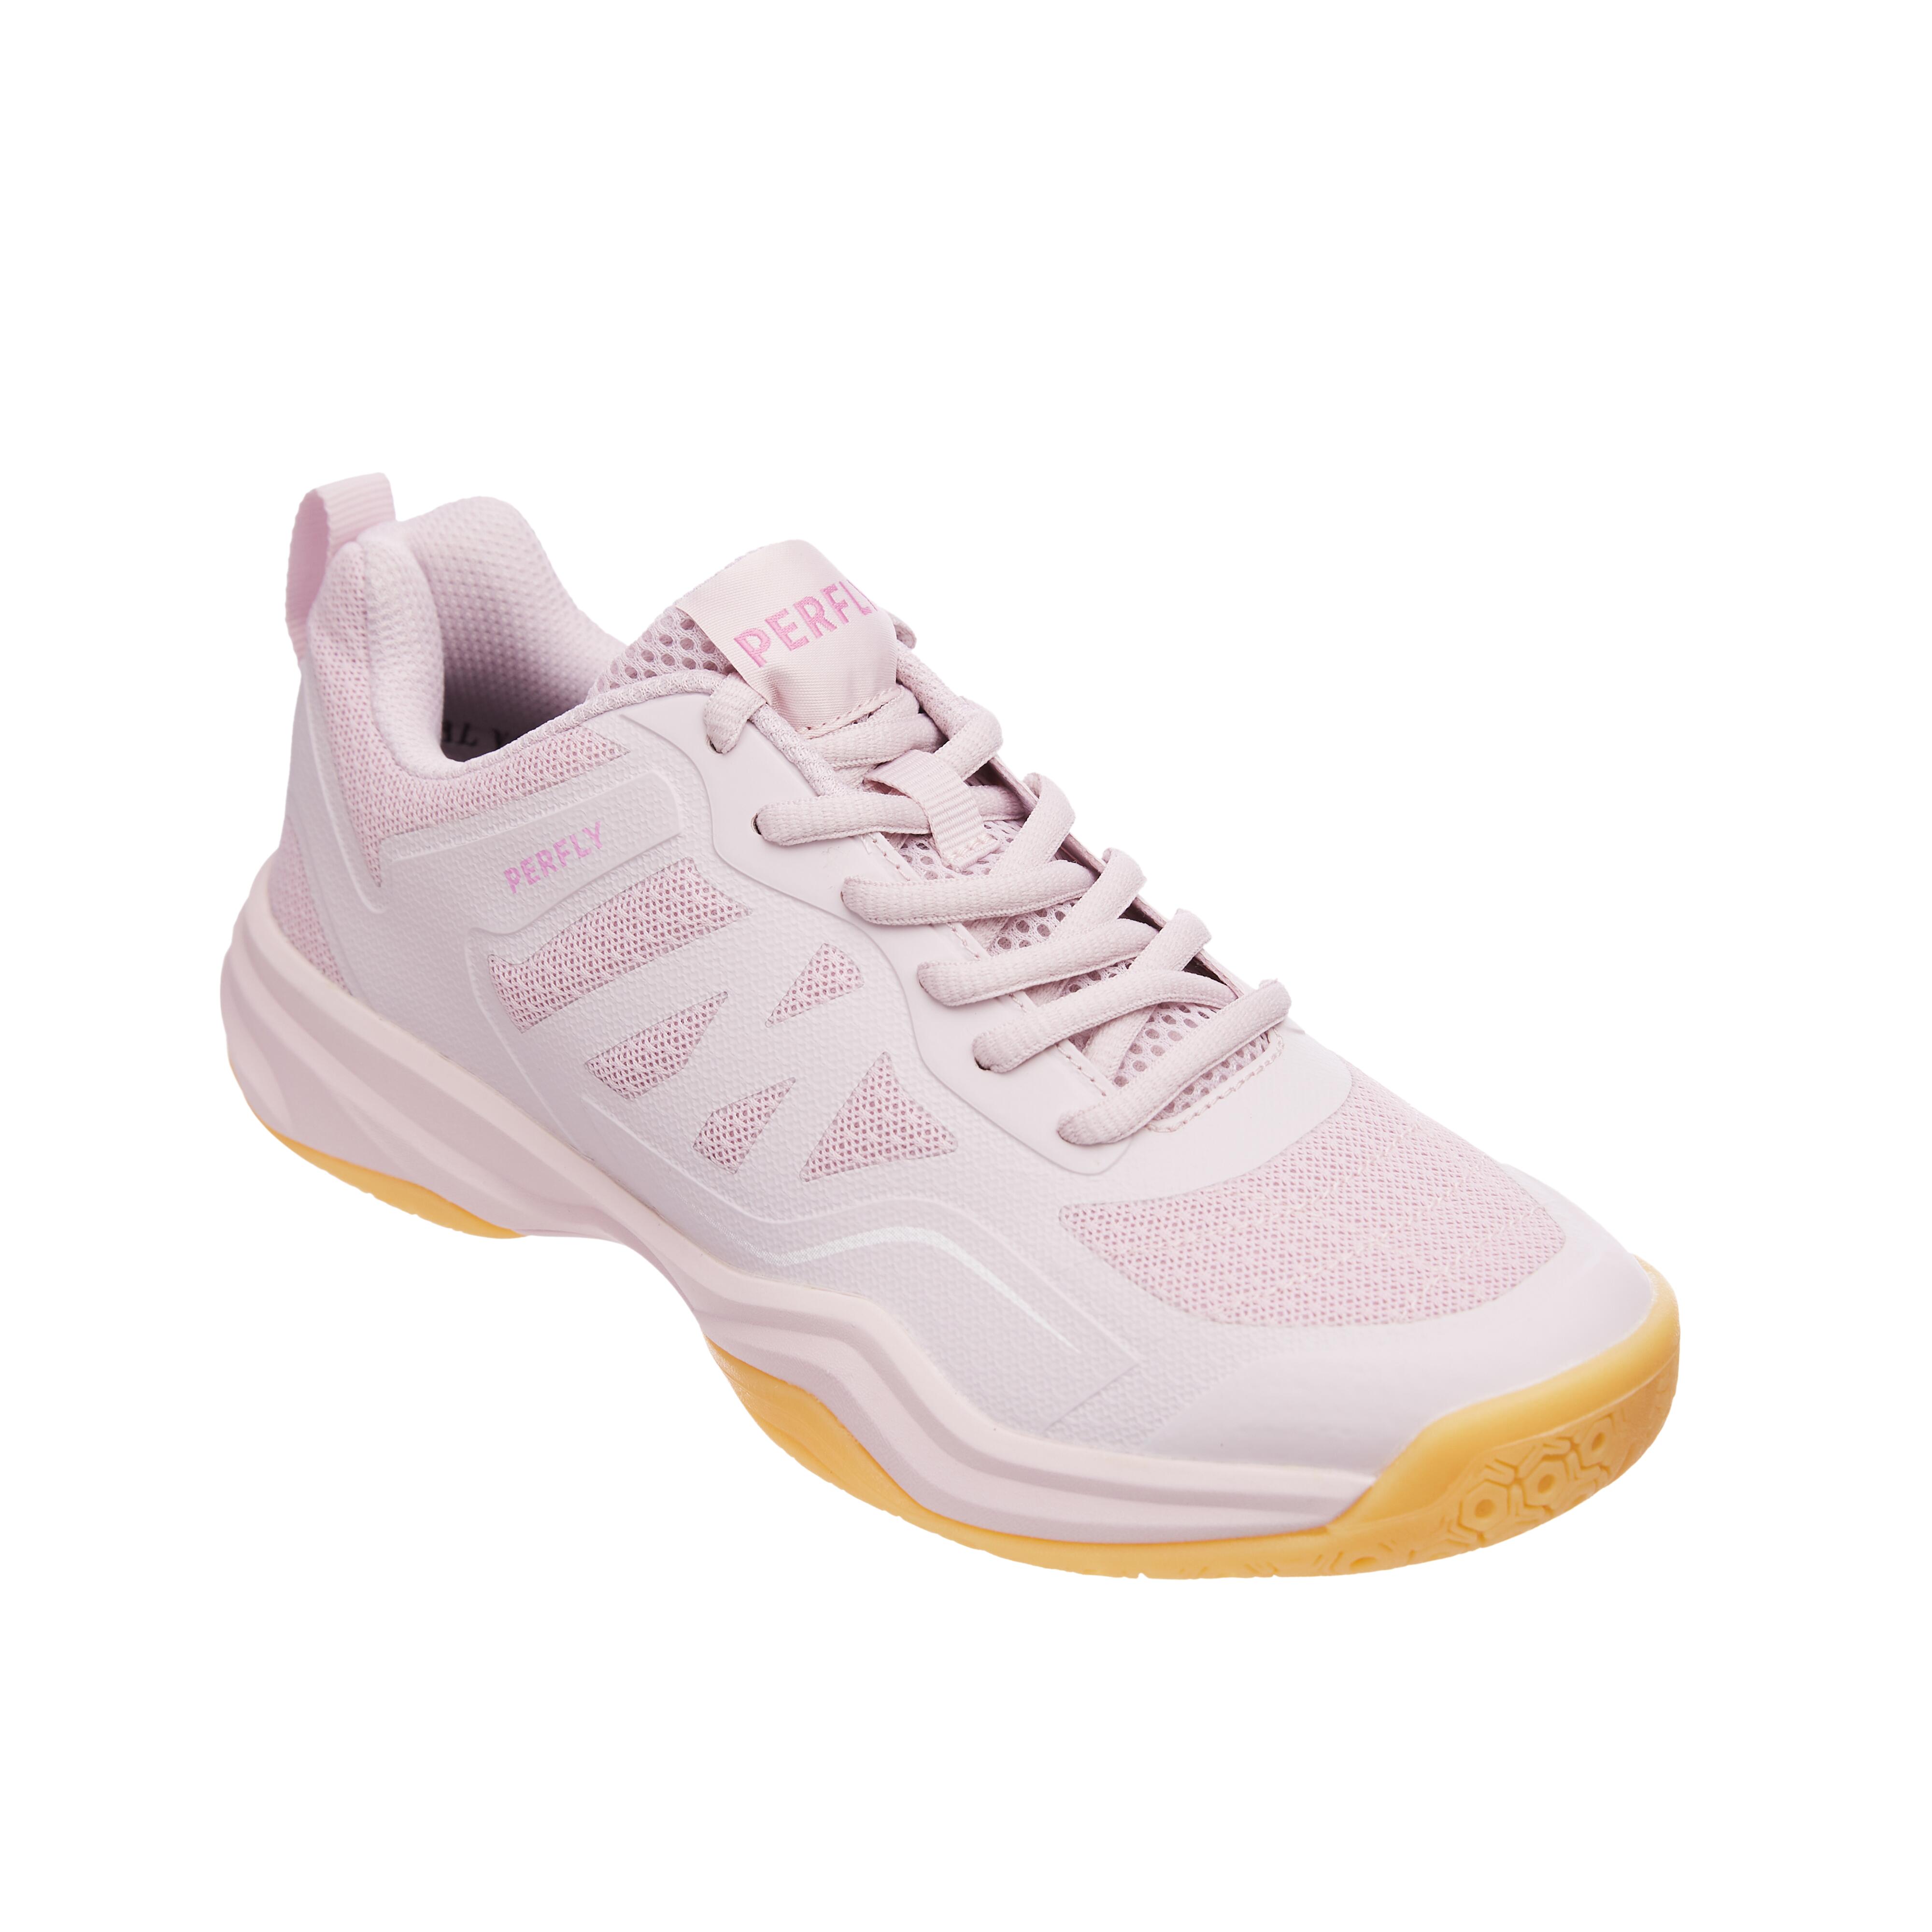 Giày cầu lông cao cấp Yonex mã Z57 màu trắng - Chuyên sỉ đồ thể thao, áo  bóng đá, áo bóng chuyền, áo cầu lông